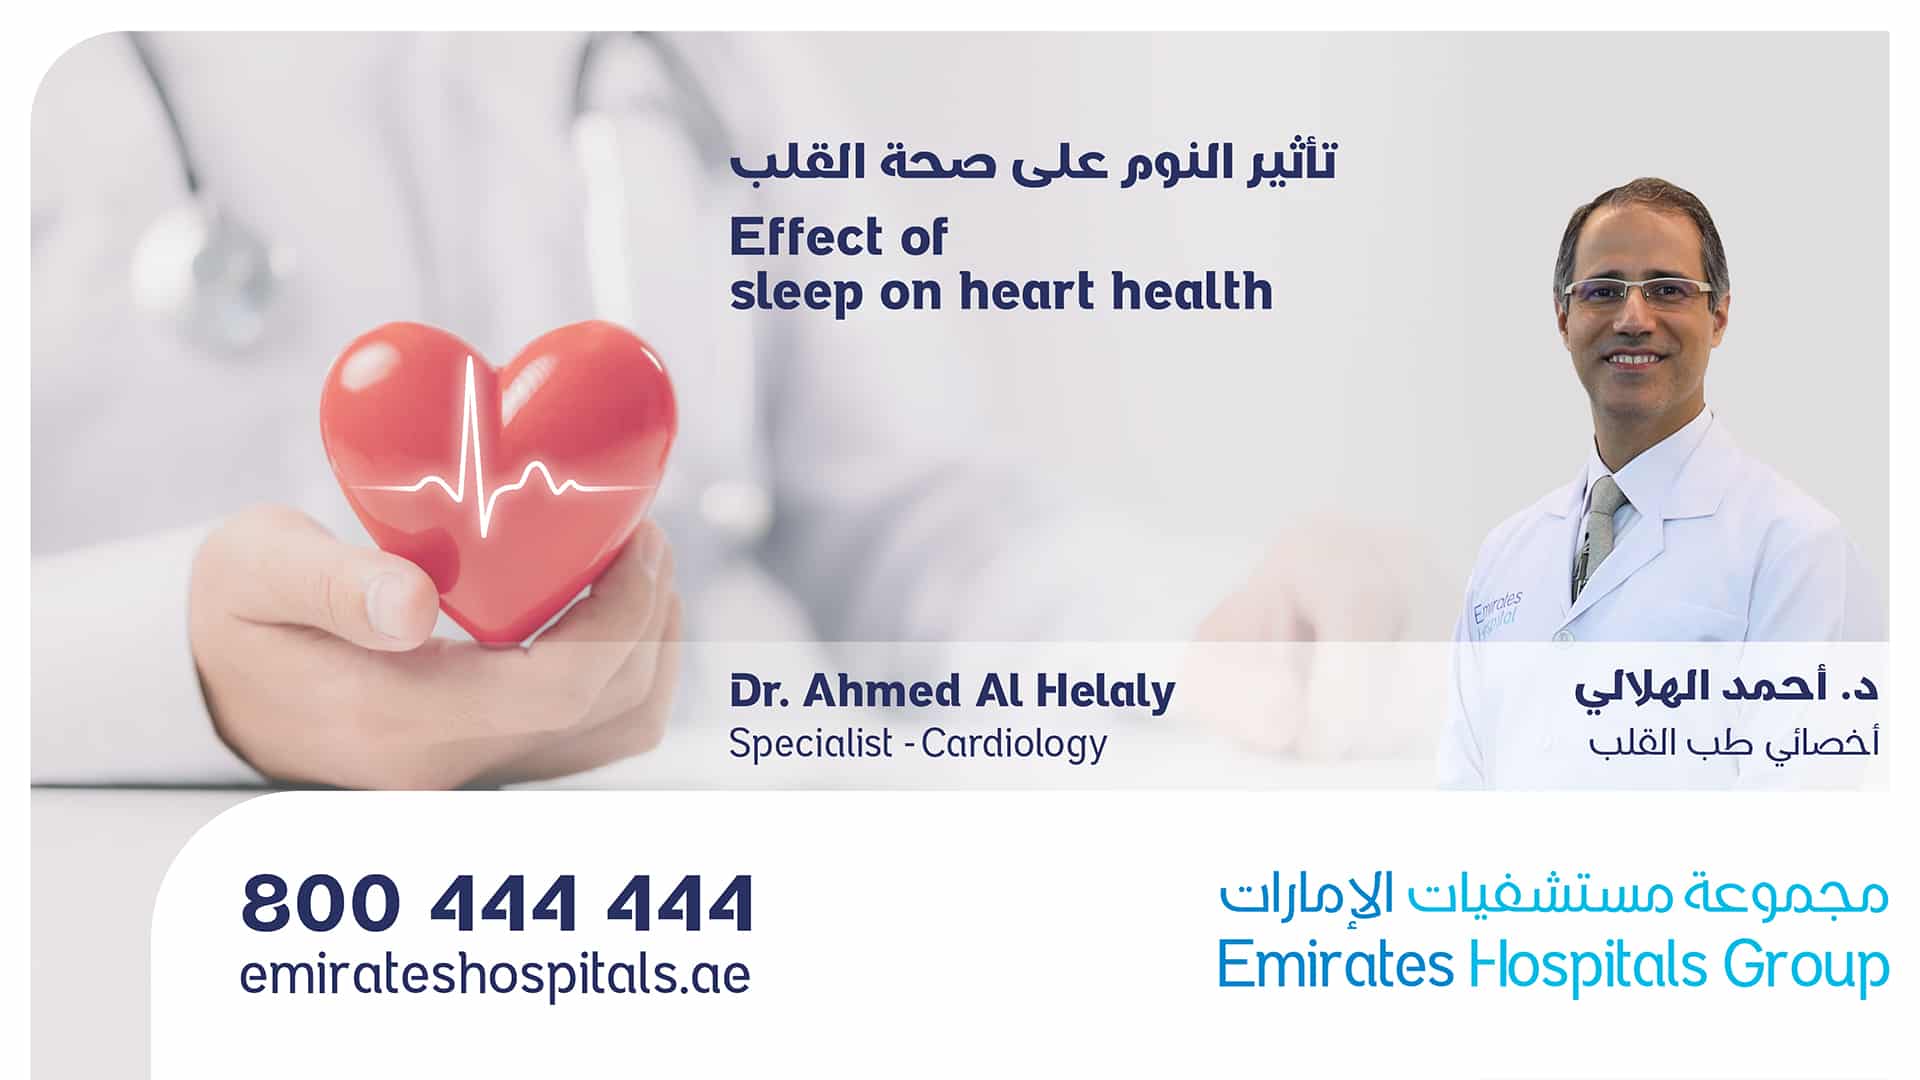 sleep on heart health - Dr. Ahmed Al Helaly , specialist Cardiology